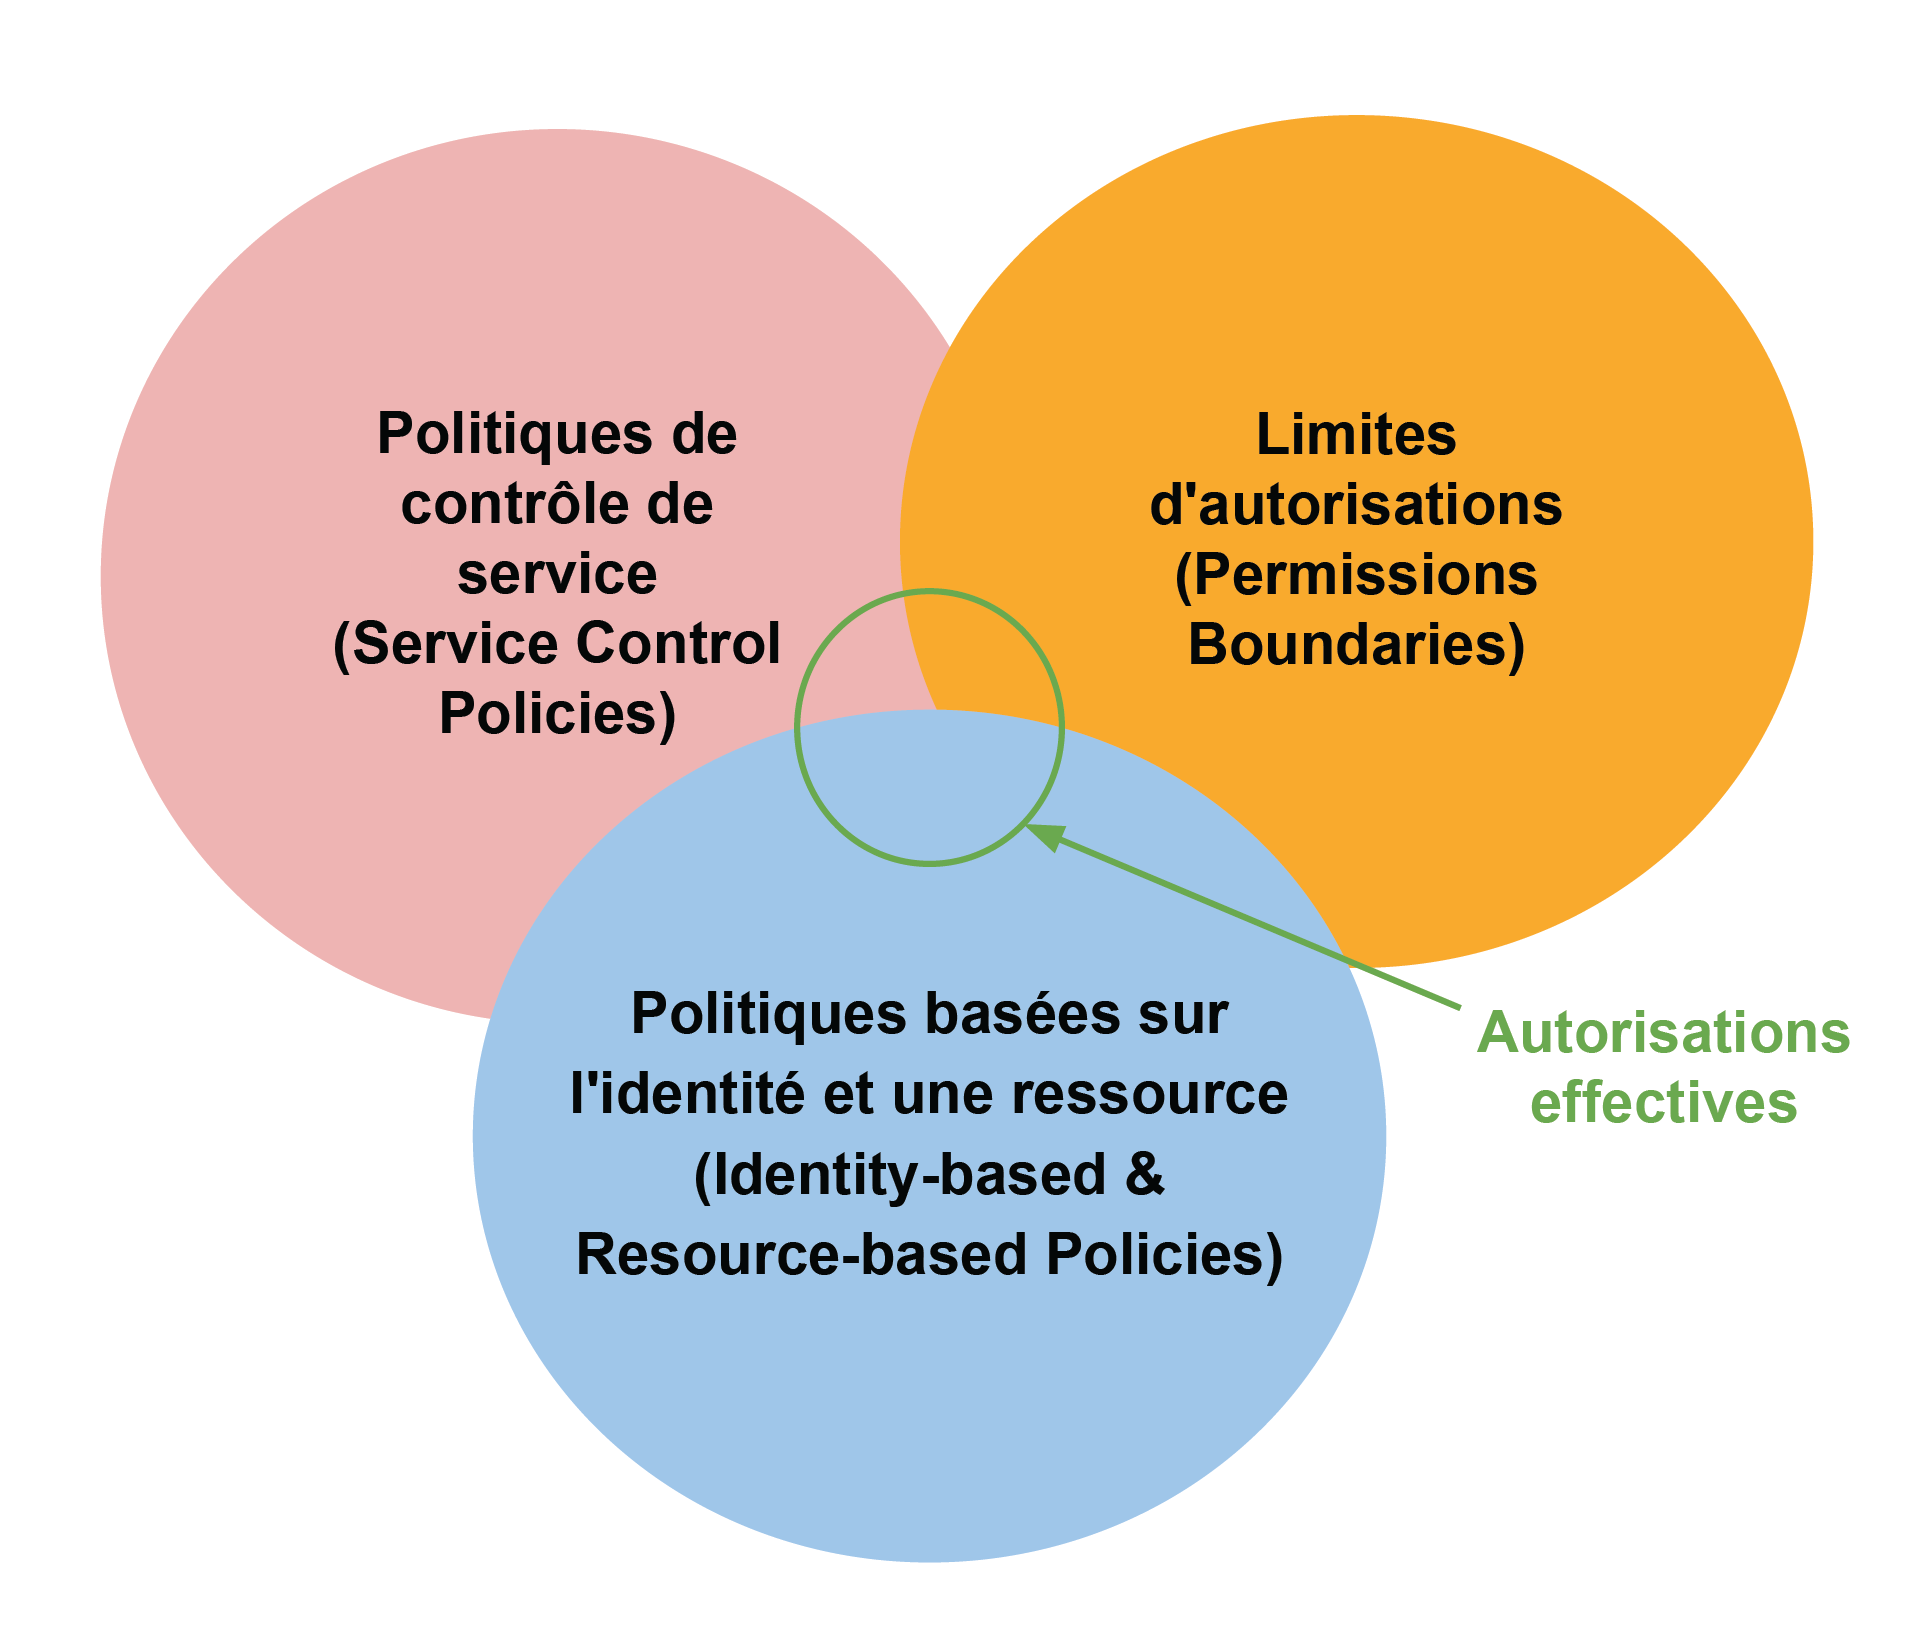 Diagramme de Venne aux trois champs: Politiques de contrôle de service, Limites d'autorisations et Politiques basées sur l'identité et une ressource. Leur superposition donne les autorisations effectives.